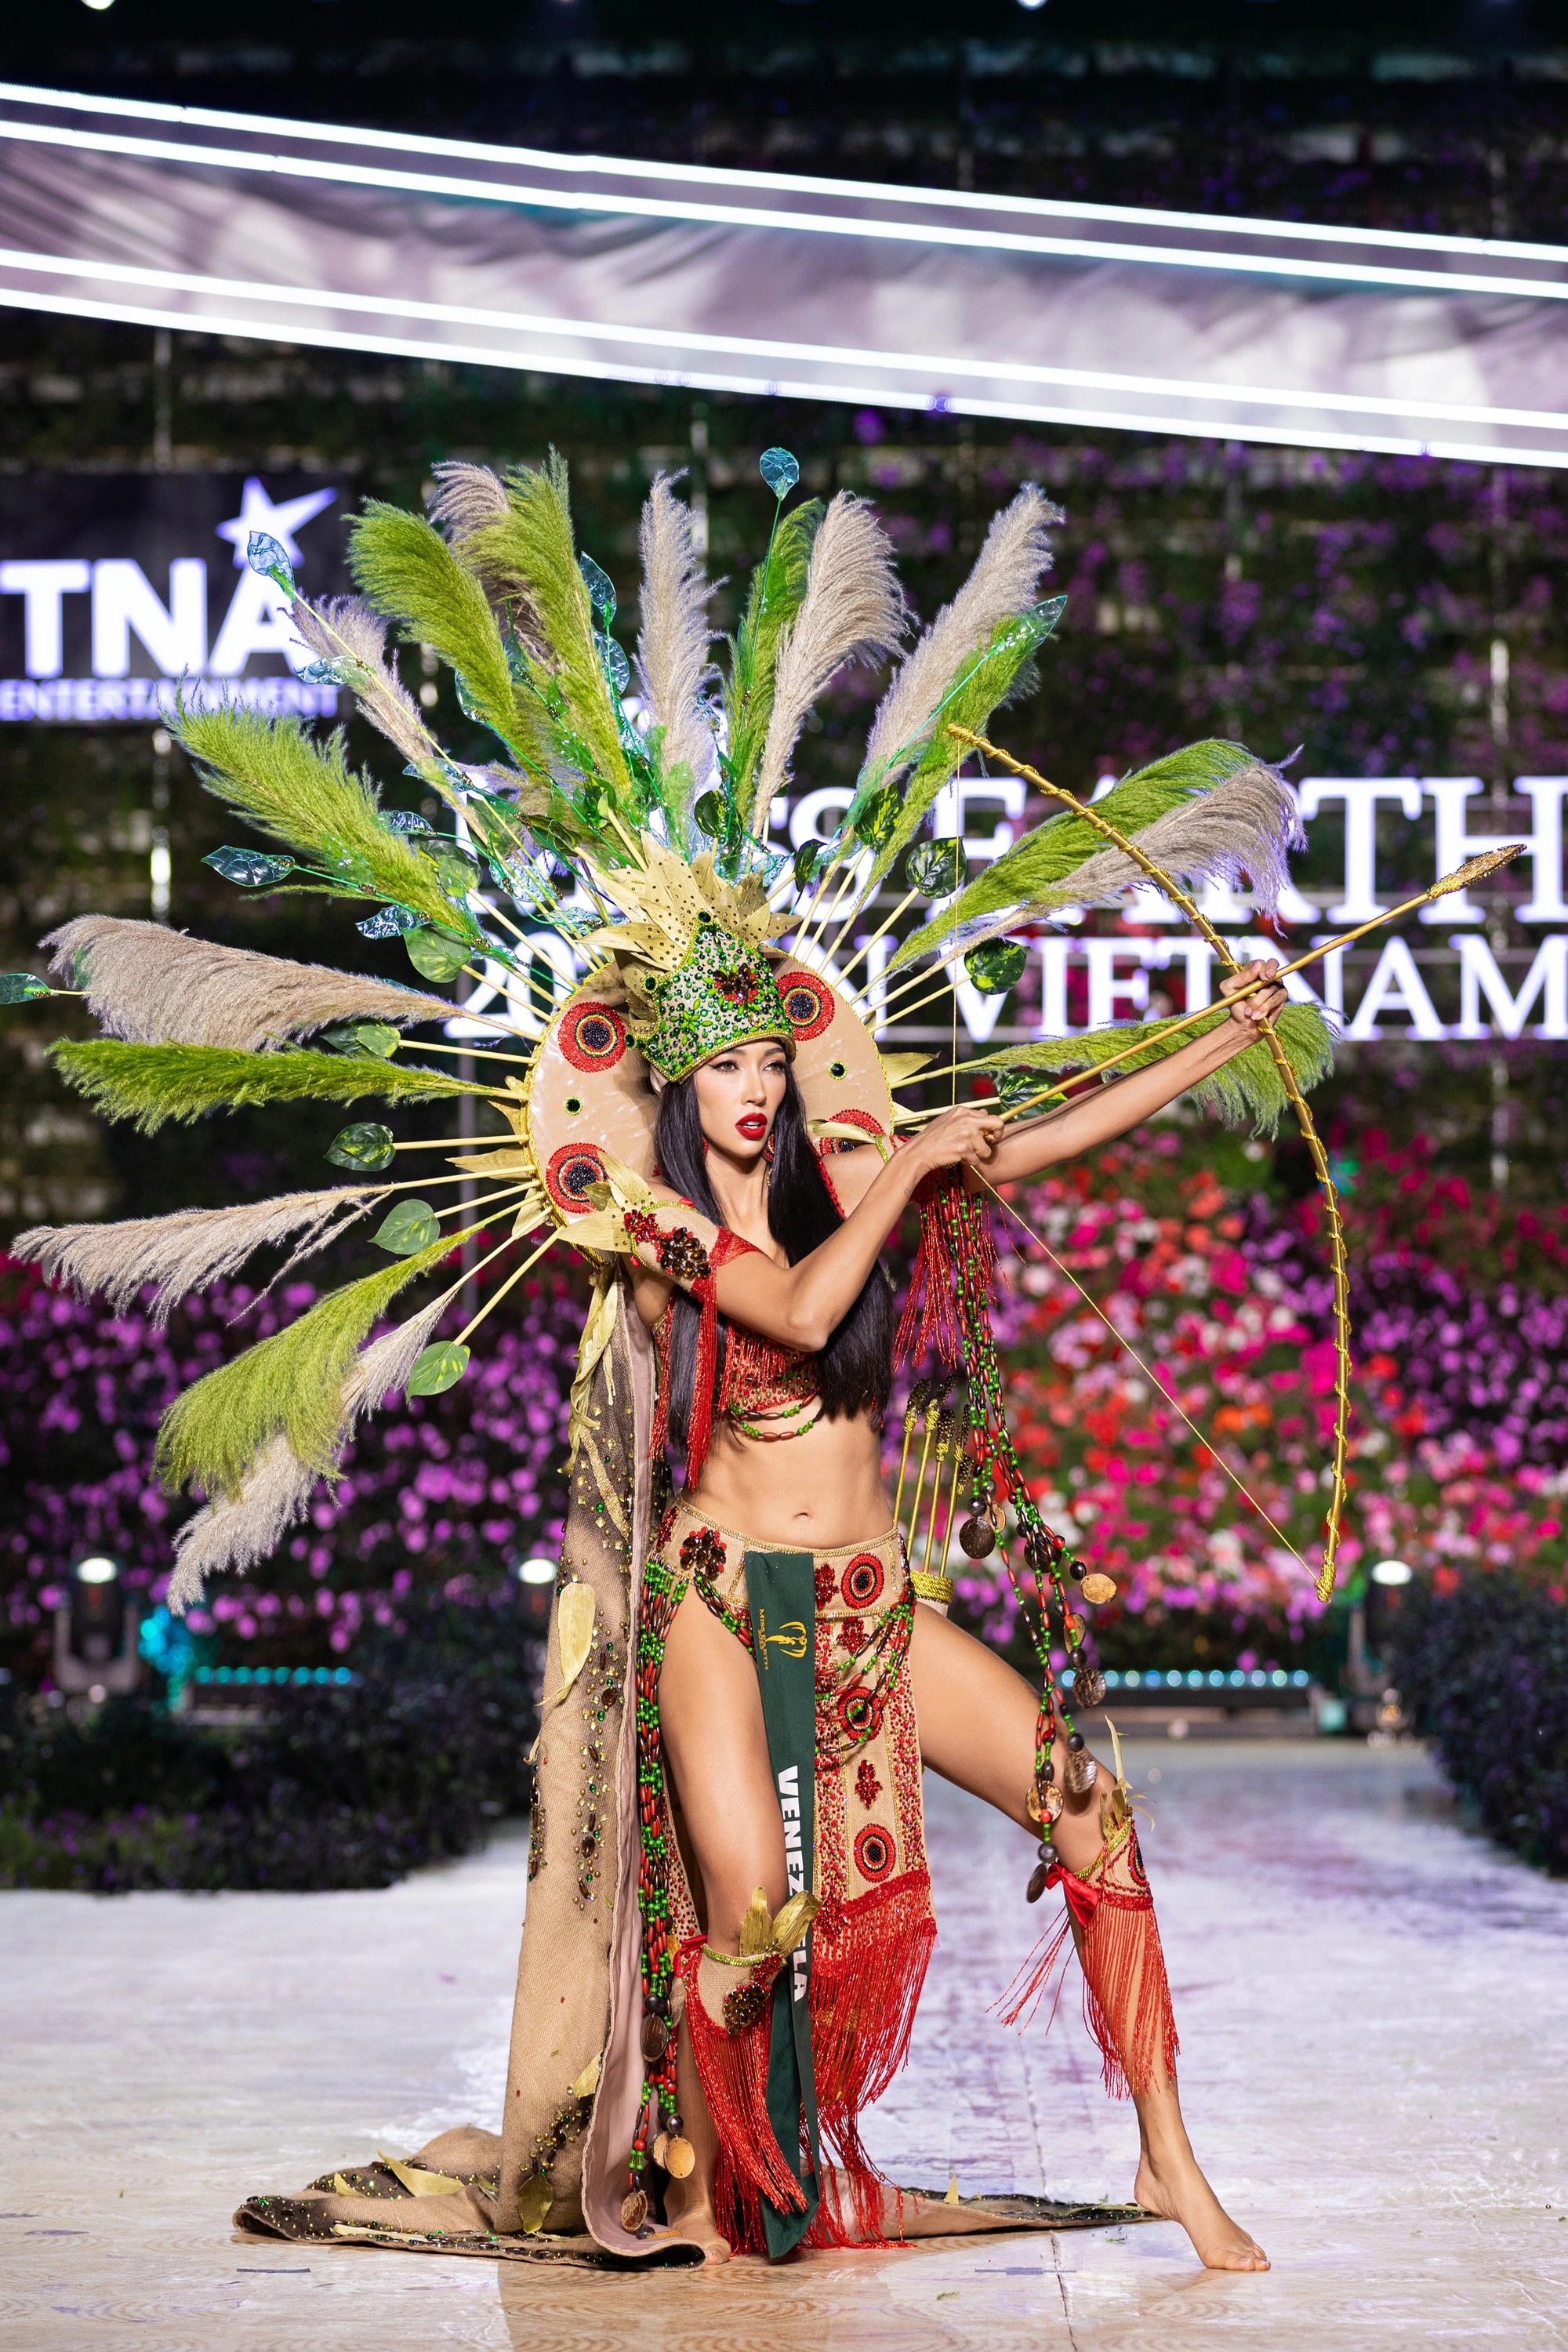 Bán kết Miss Earth 2023 màn trình Trang phục Dân tộc bùng nổ hình ảnh cỏ hoa, muông thú - Ảnh 5.